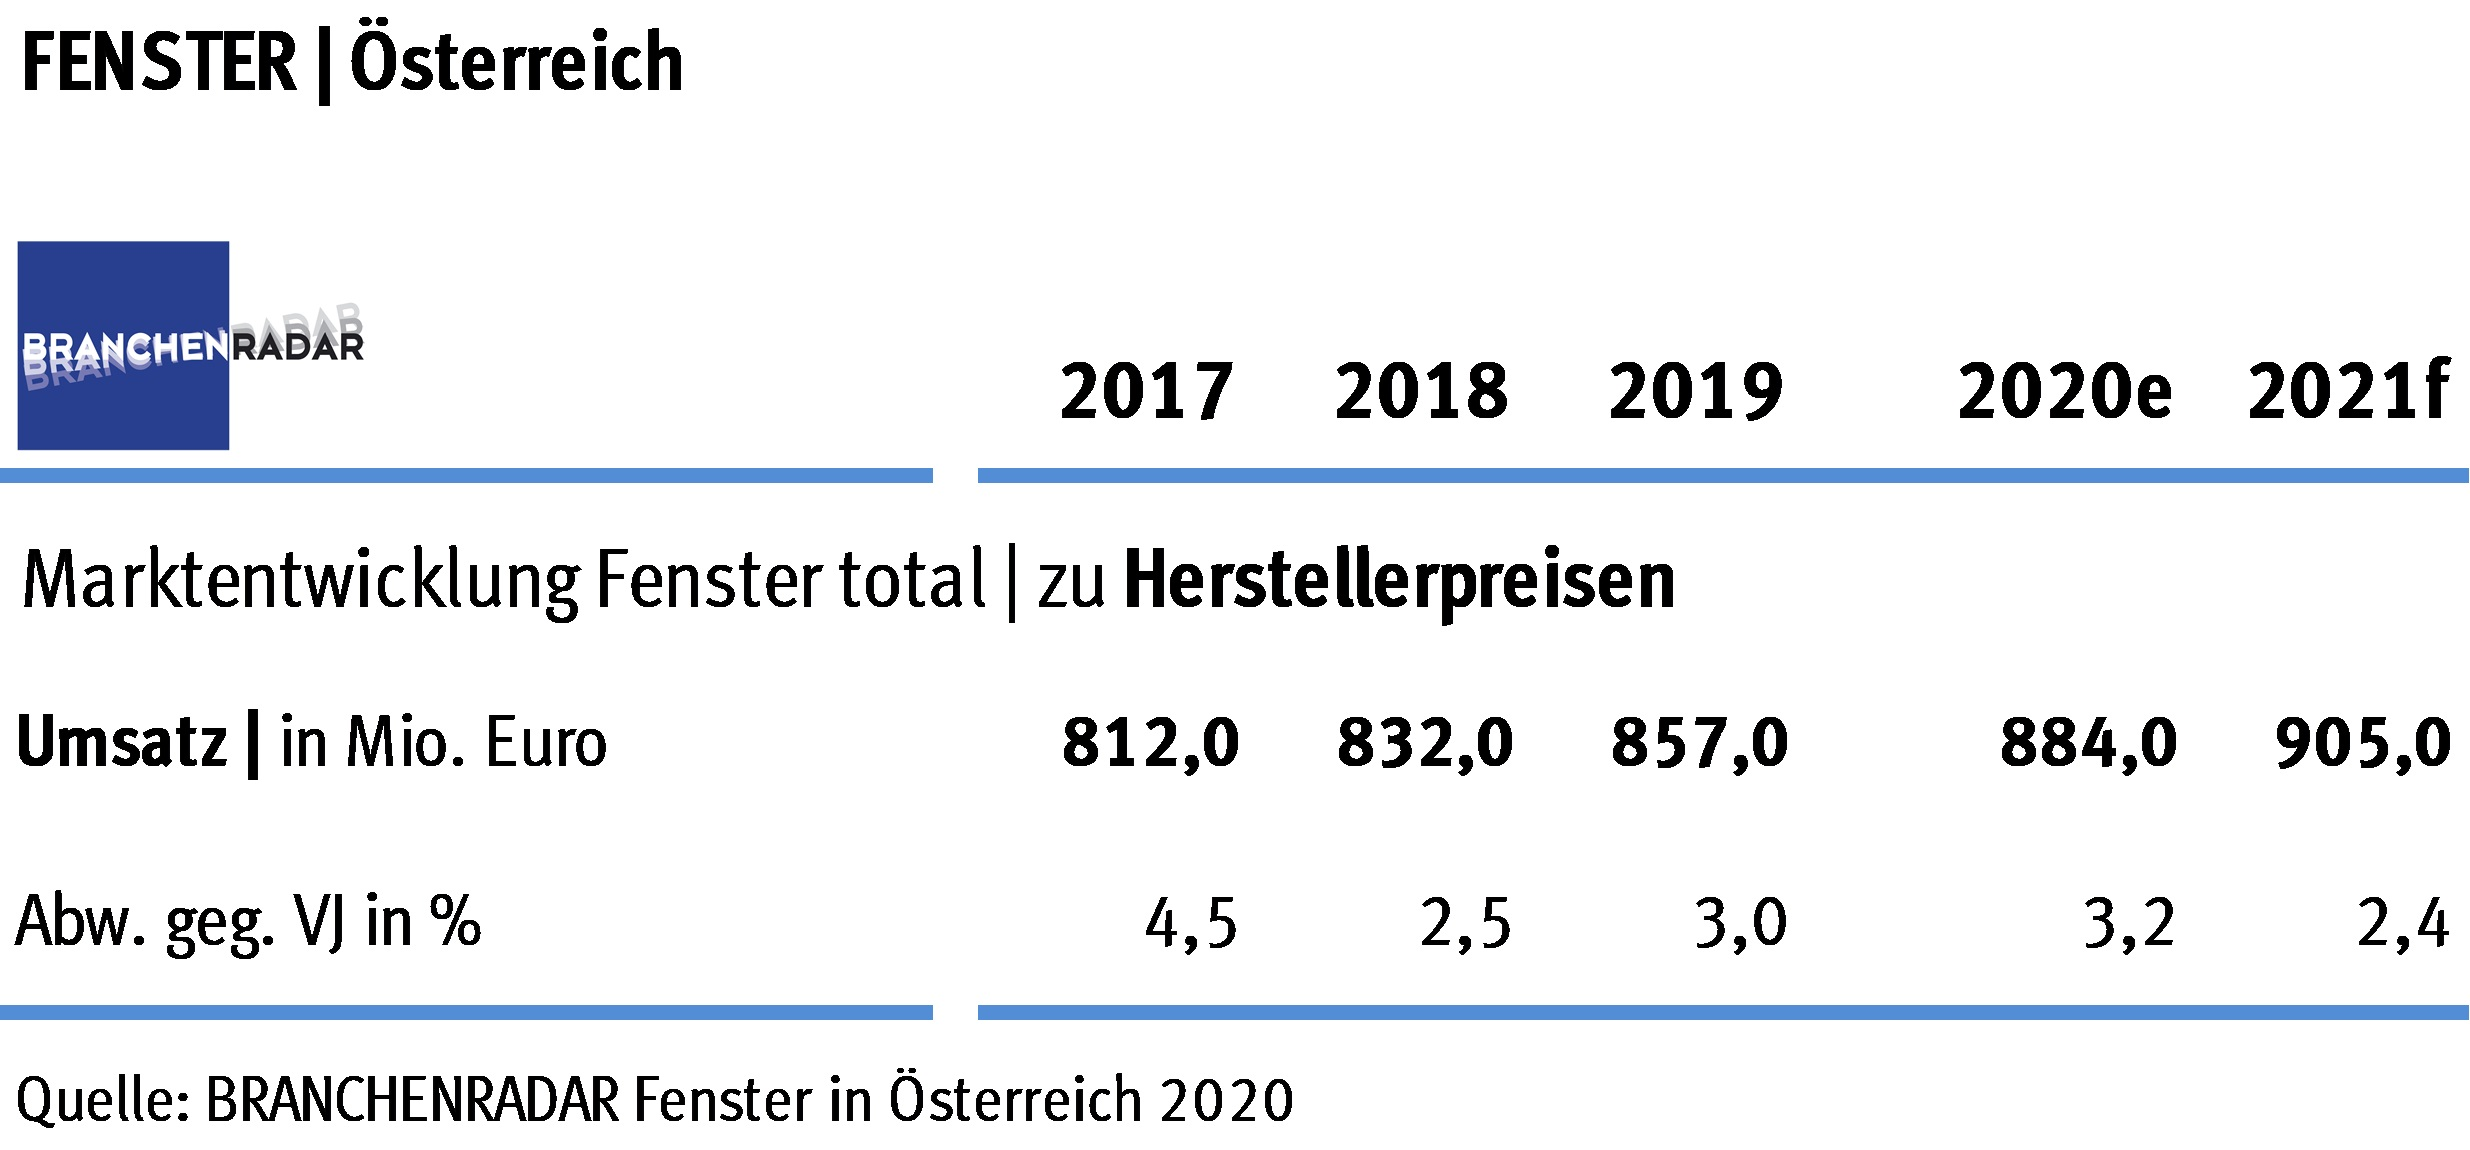 Man hatte sich wohl mehr erwartet, ein moderater Aufschwung war es aber allemal. Laut aktuellem BRANCHENRADAR Fenster in Österreich wuchs die Nachfrage nach Fenstern und Hebeschiebetüren im vergangenen Jahr um 1,4 Prozent gegenüber Vorjahr auf rund 2,22 Millionen Flügel. 